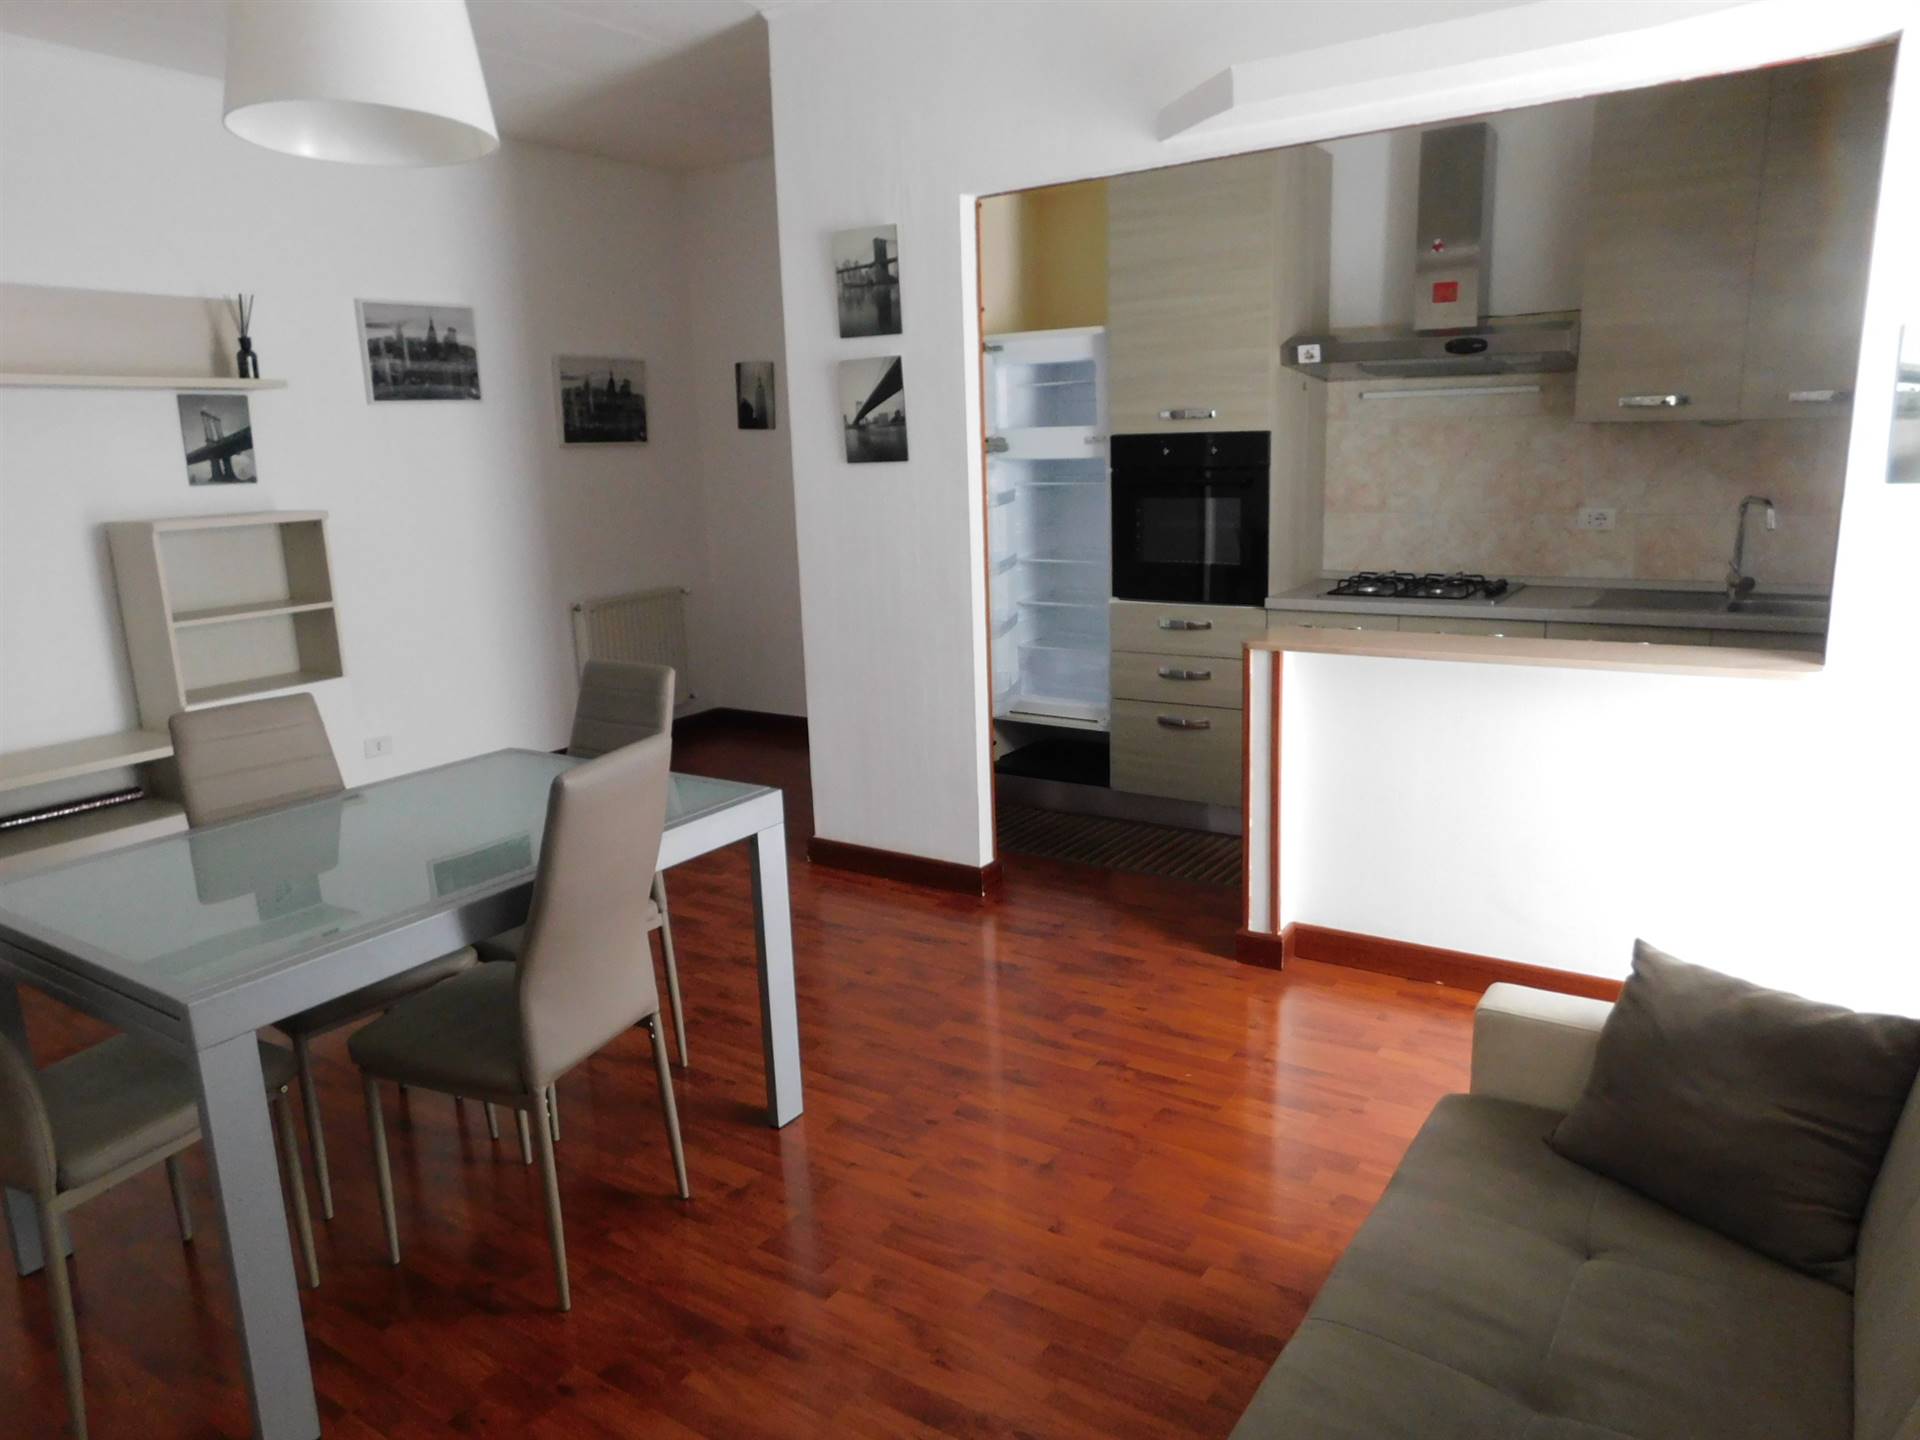 Appartamento in affitto a San Cataldo Caltanissetta